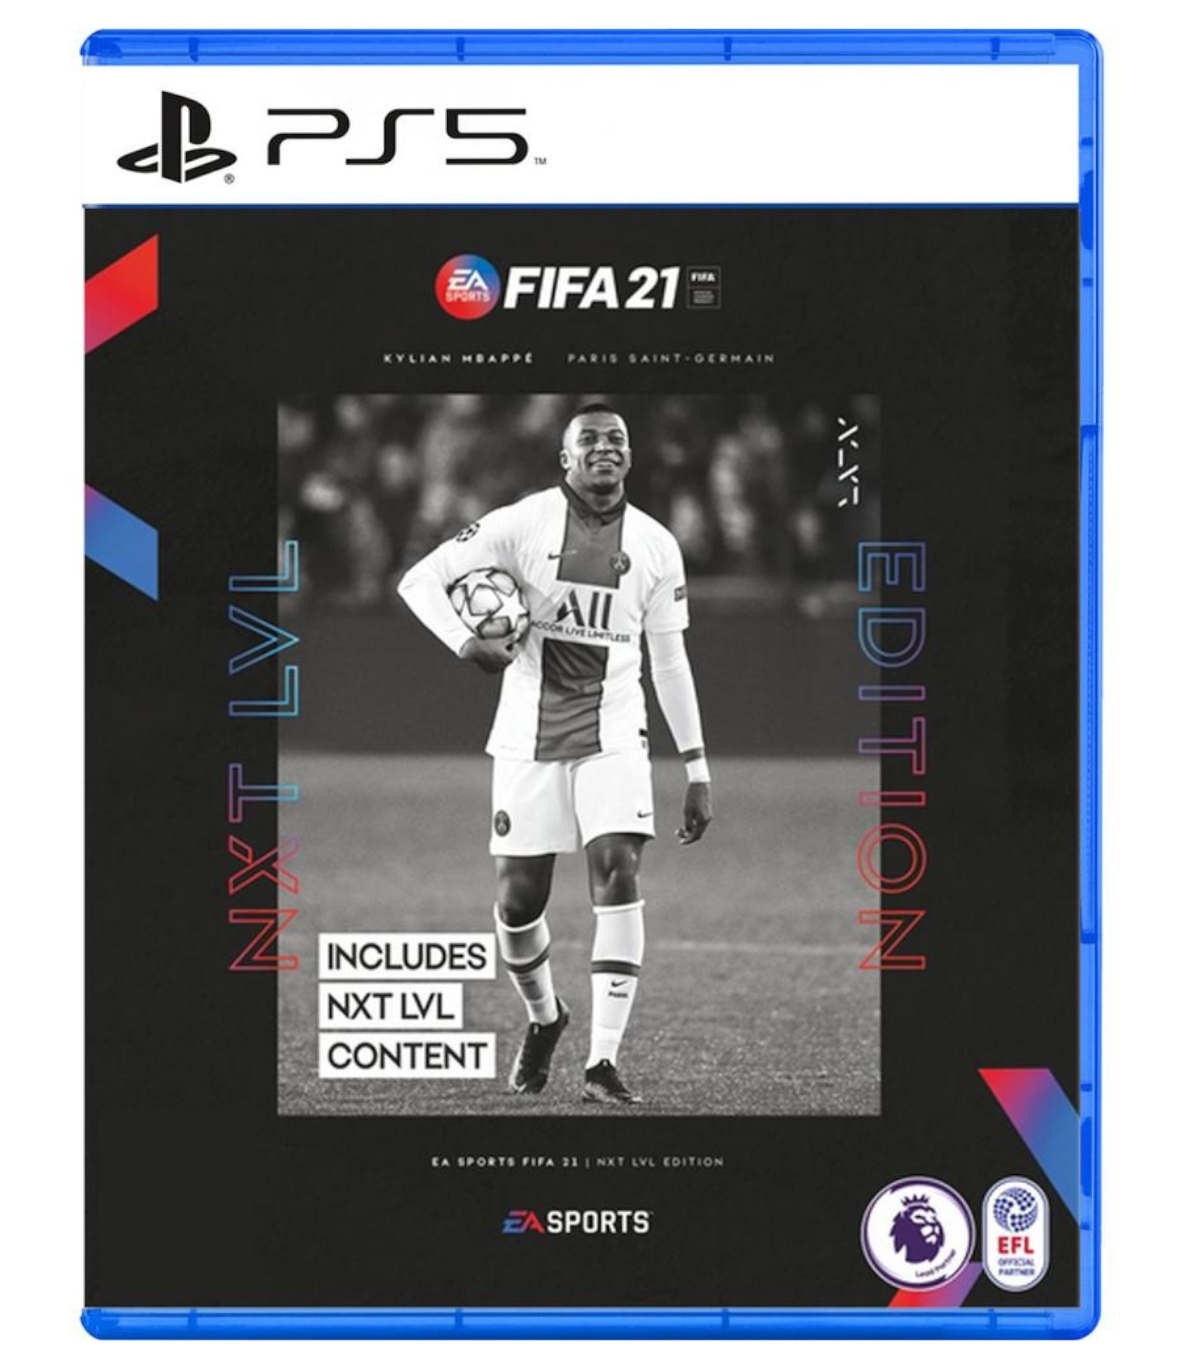 بازی فیفا FIFA 21 شامل محتوای Next Level کارکرده - پلی استیشن 5